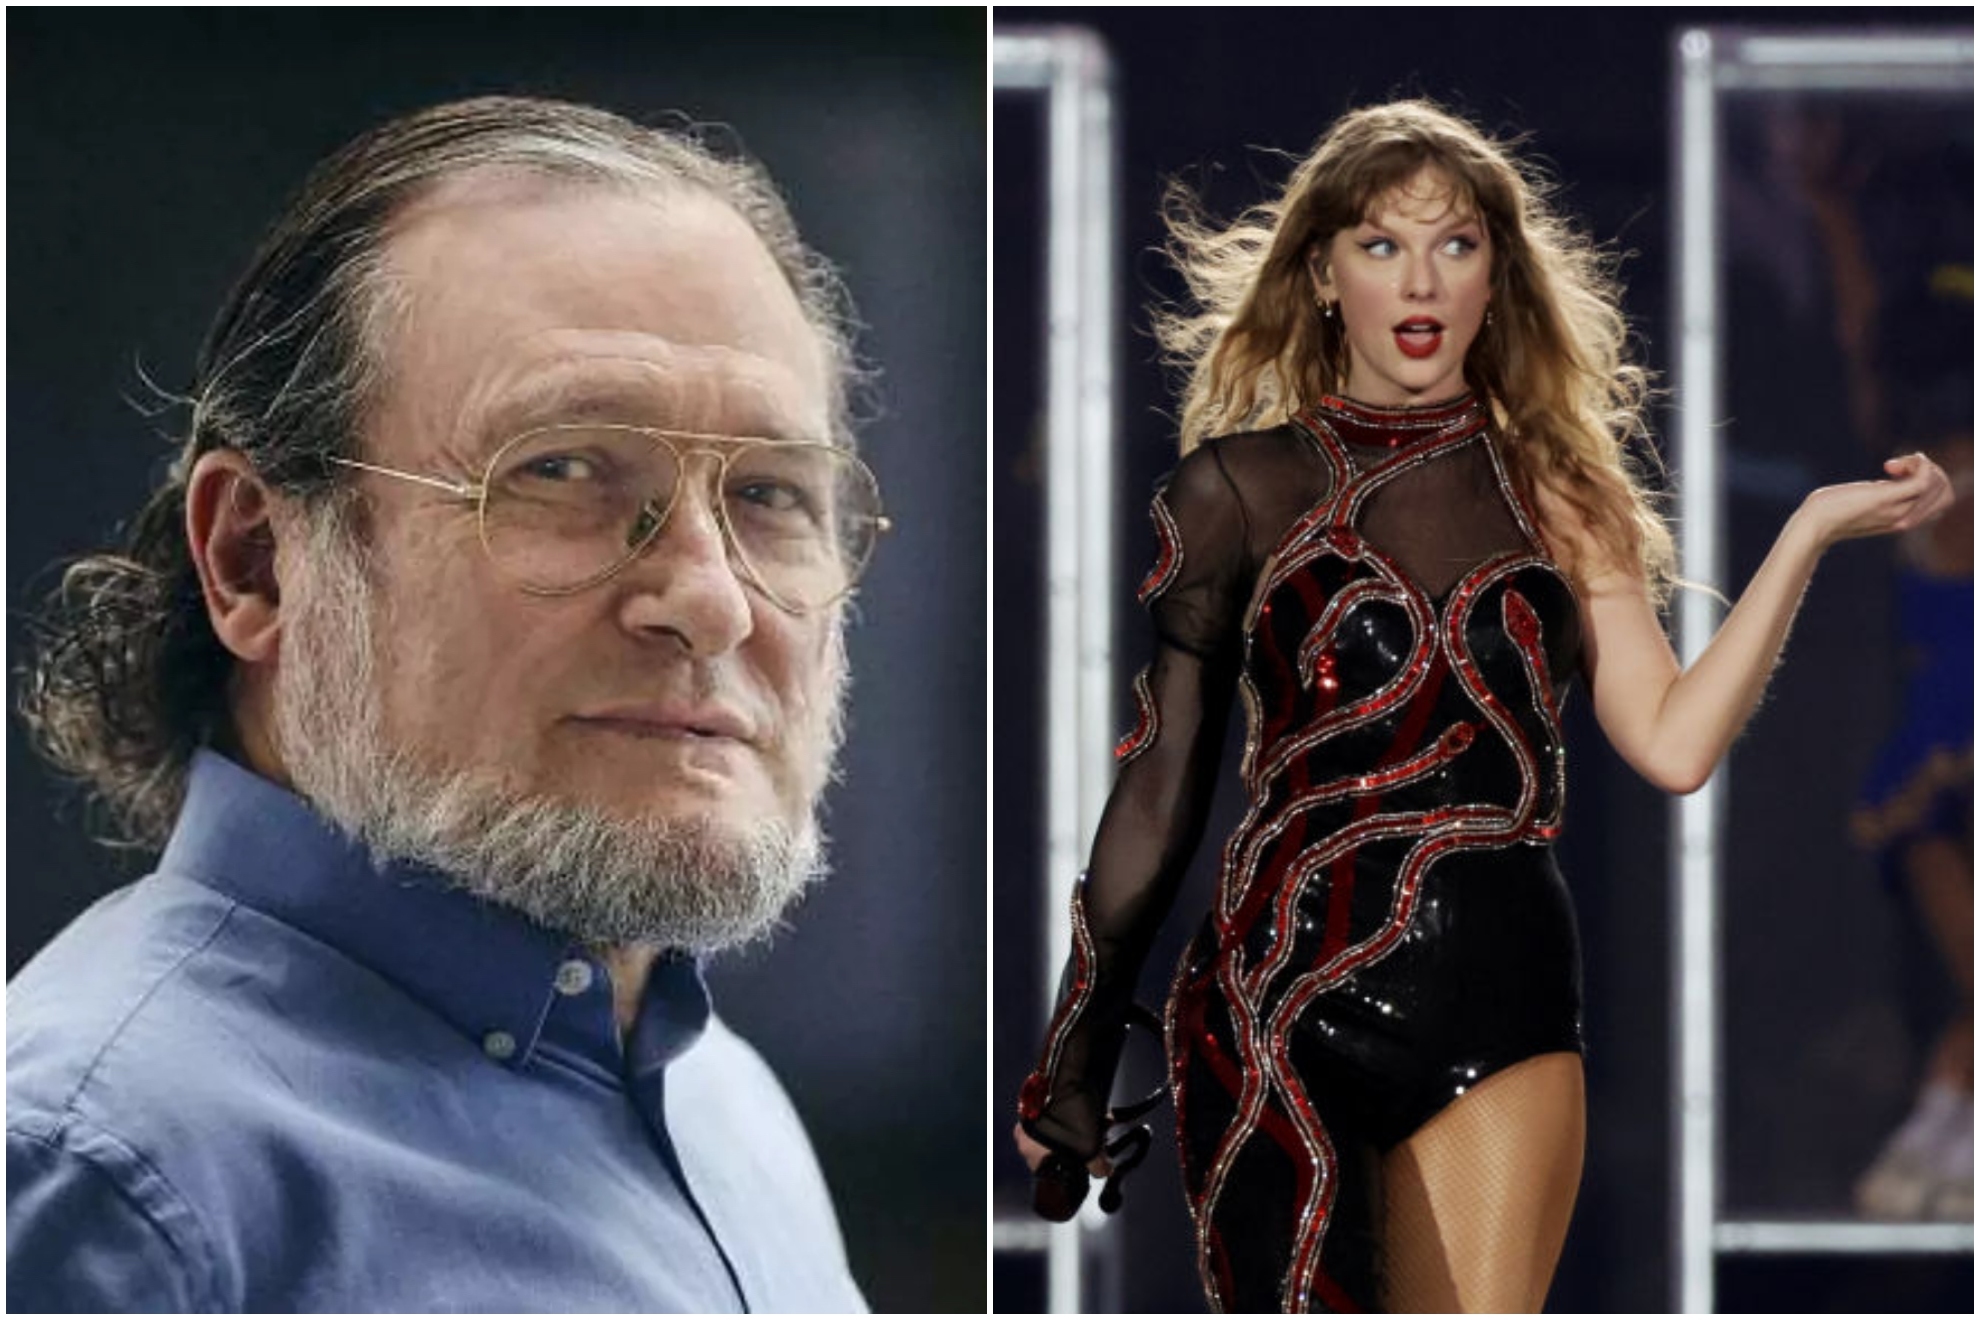 Nio Becerra critica el dispendio por ver a Taylor Swift y lo enlaza con recortes en comida y salud: Para meditar